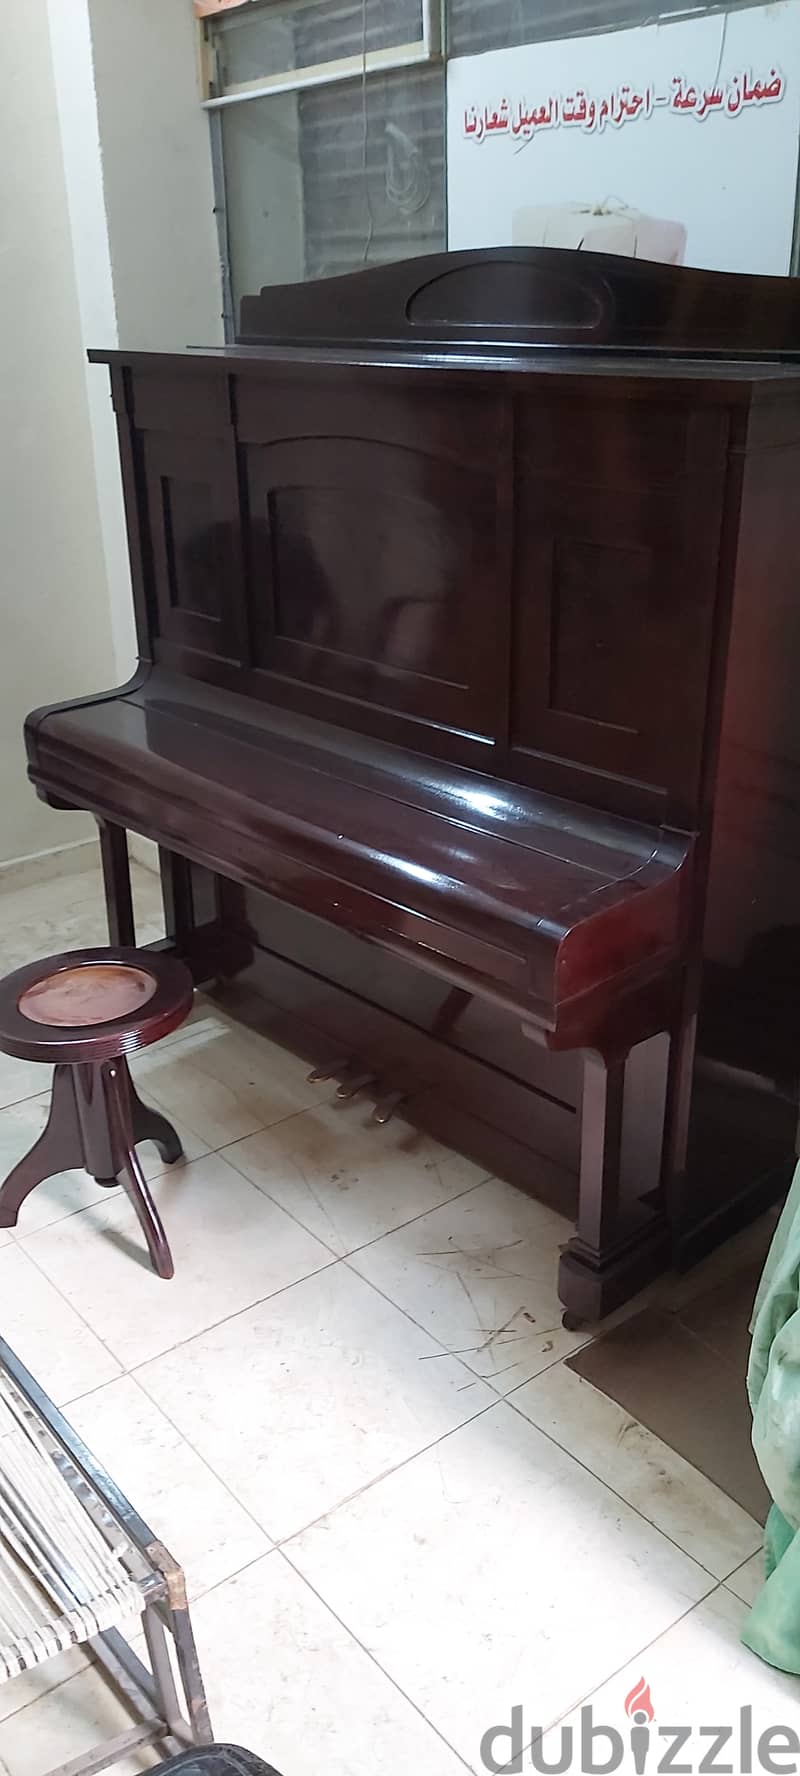 بيانو للبيع 16